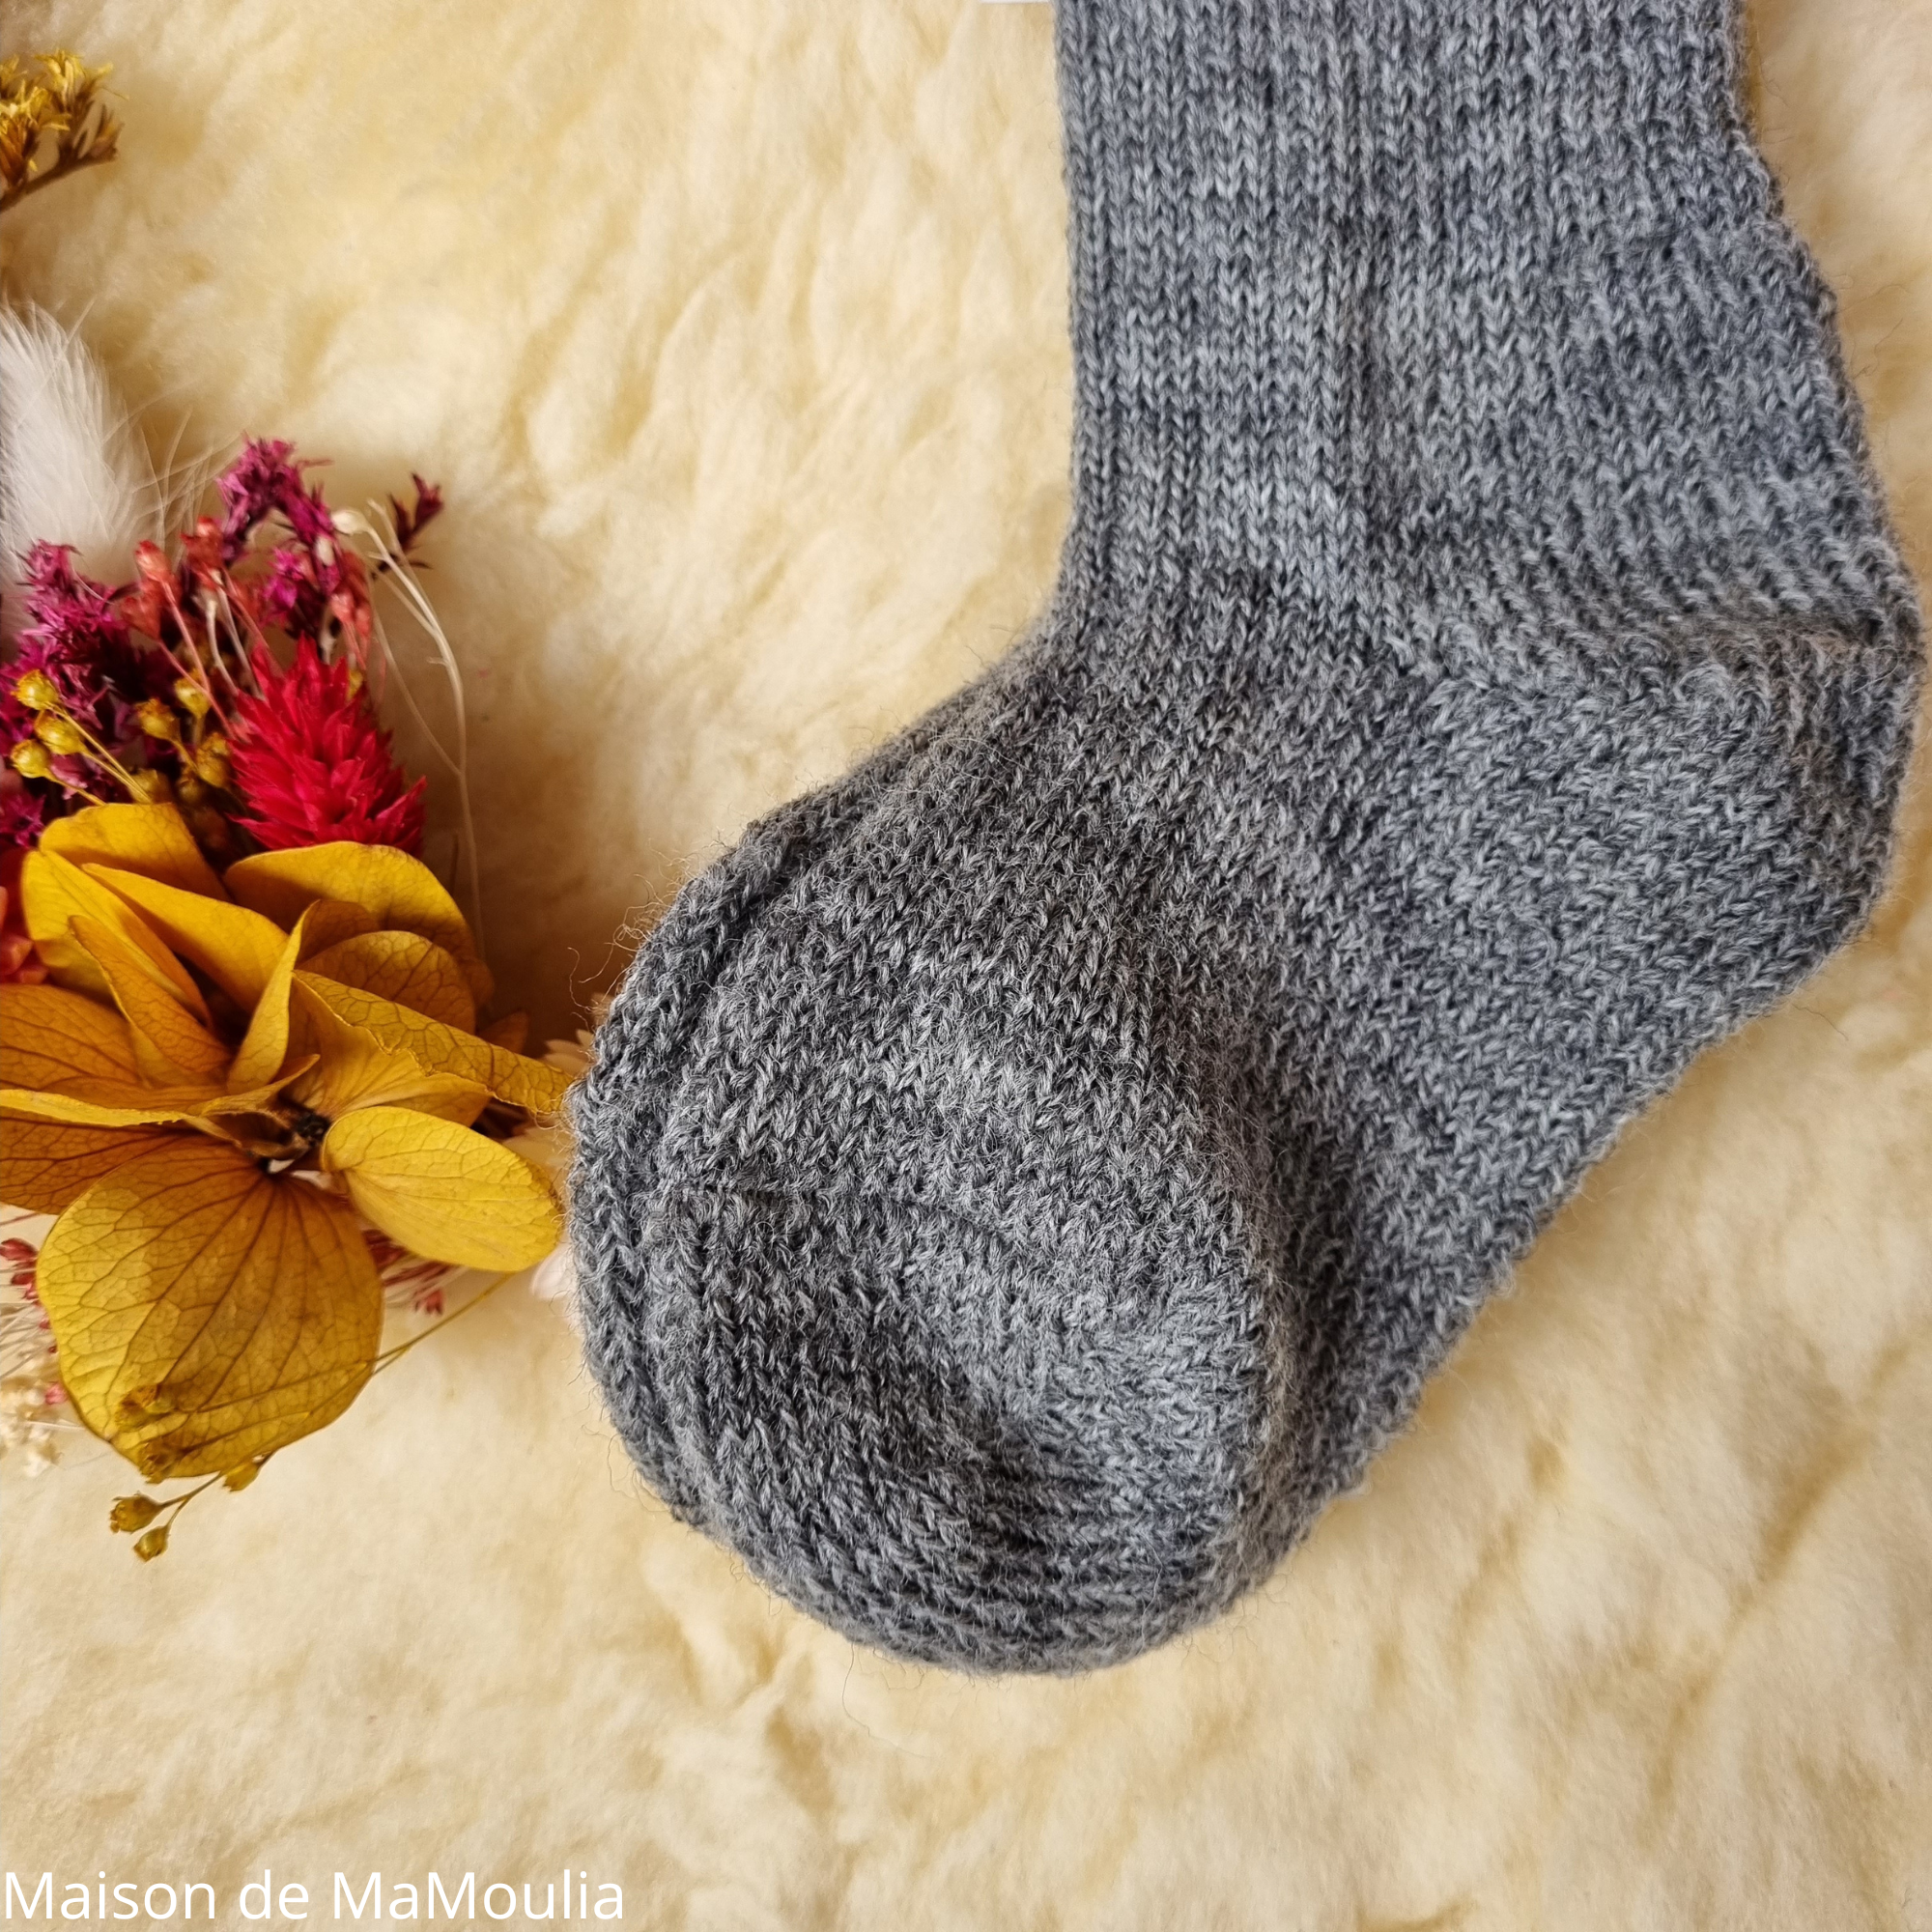 11-chaussettes-chaudes-pure-laine-bio-ecologique-hirsch-natur-bebe-enfant-maison-de-mamoulia- tres-epaisses-gris